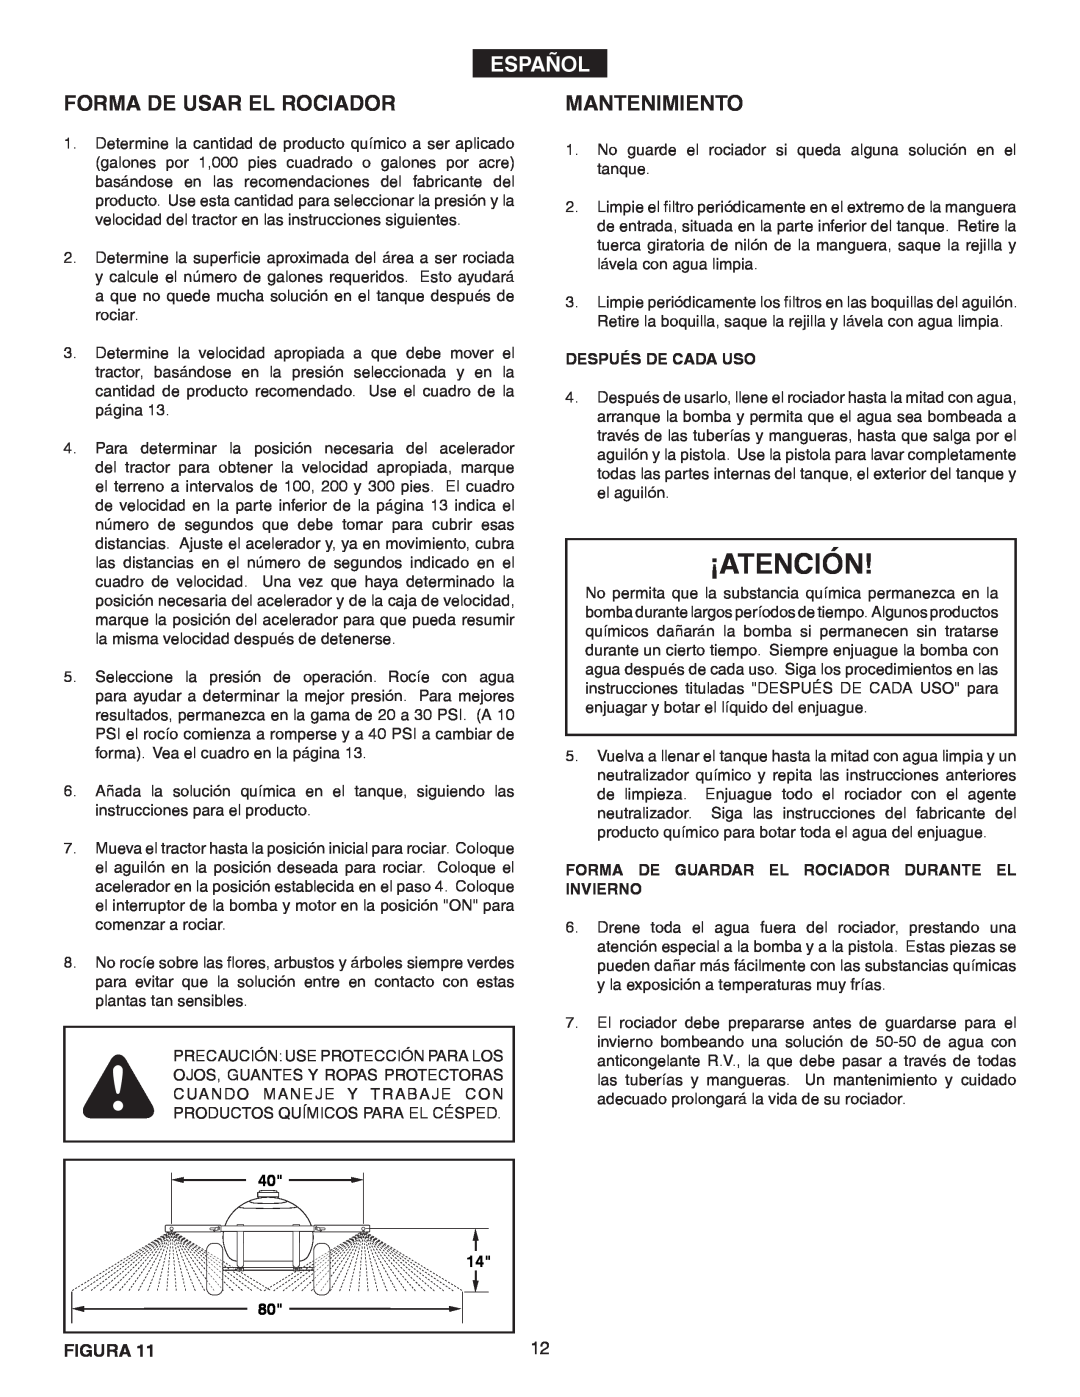 Agri-Fab 45-02932 owner manual ¡Atención, Forma De Usar El Rociador, Mantenimiento, Español 